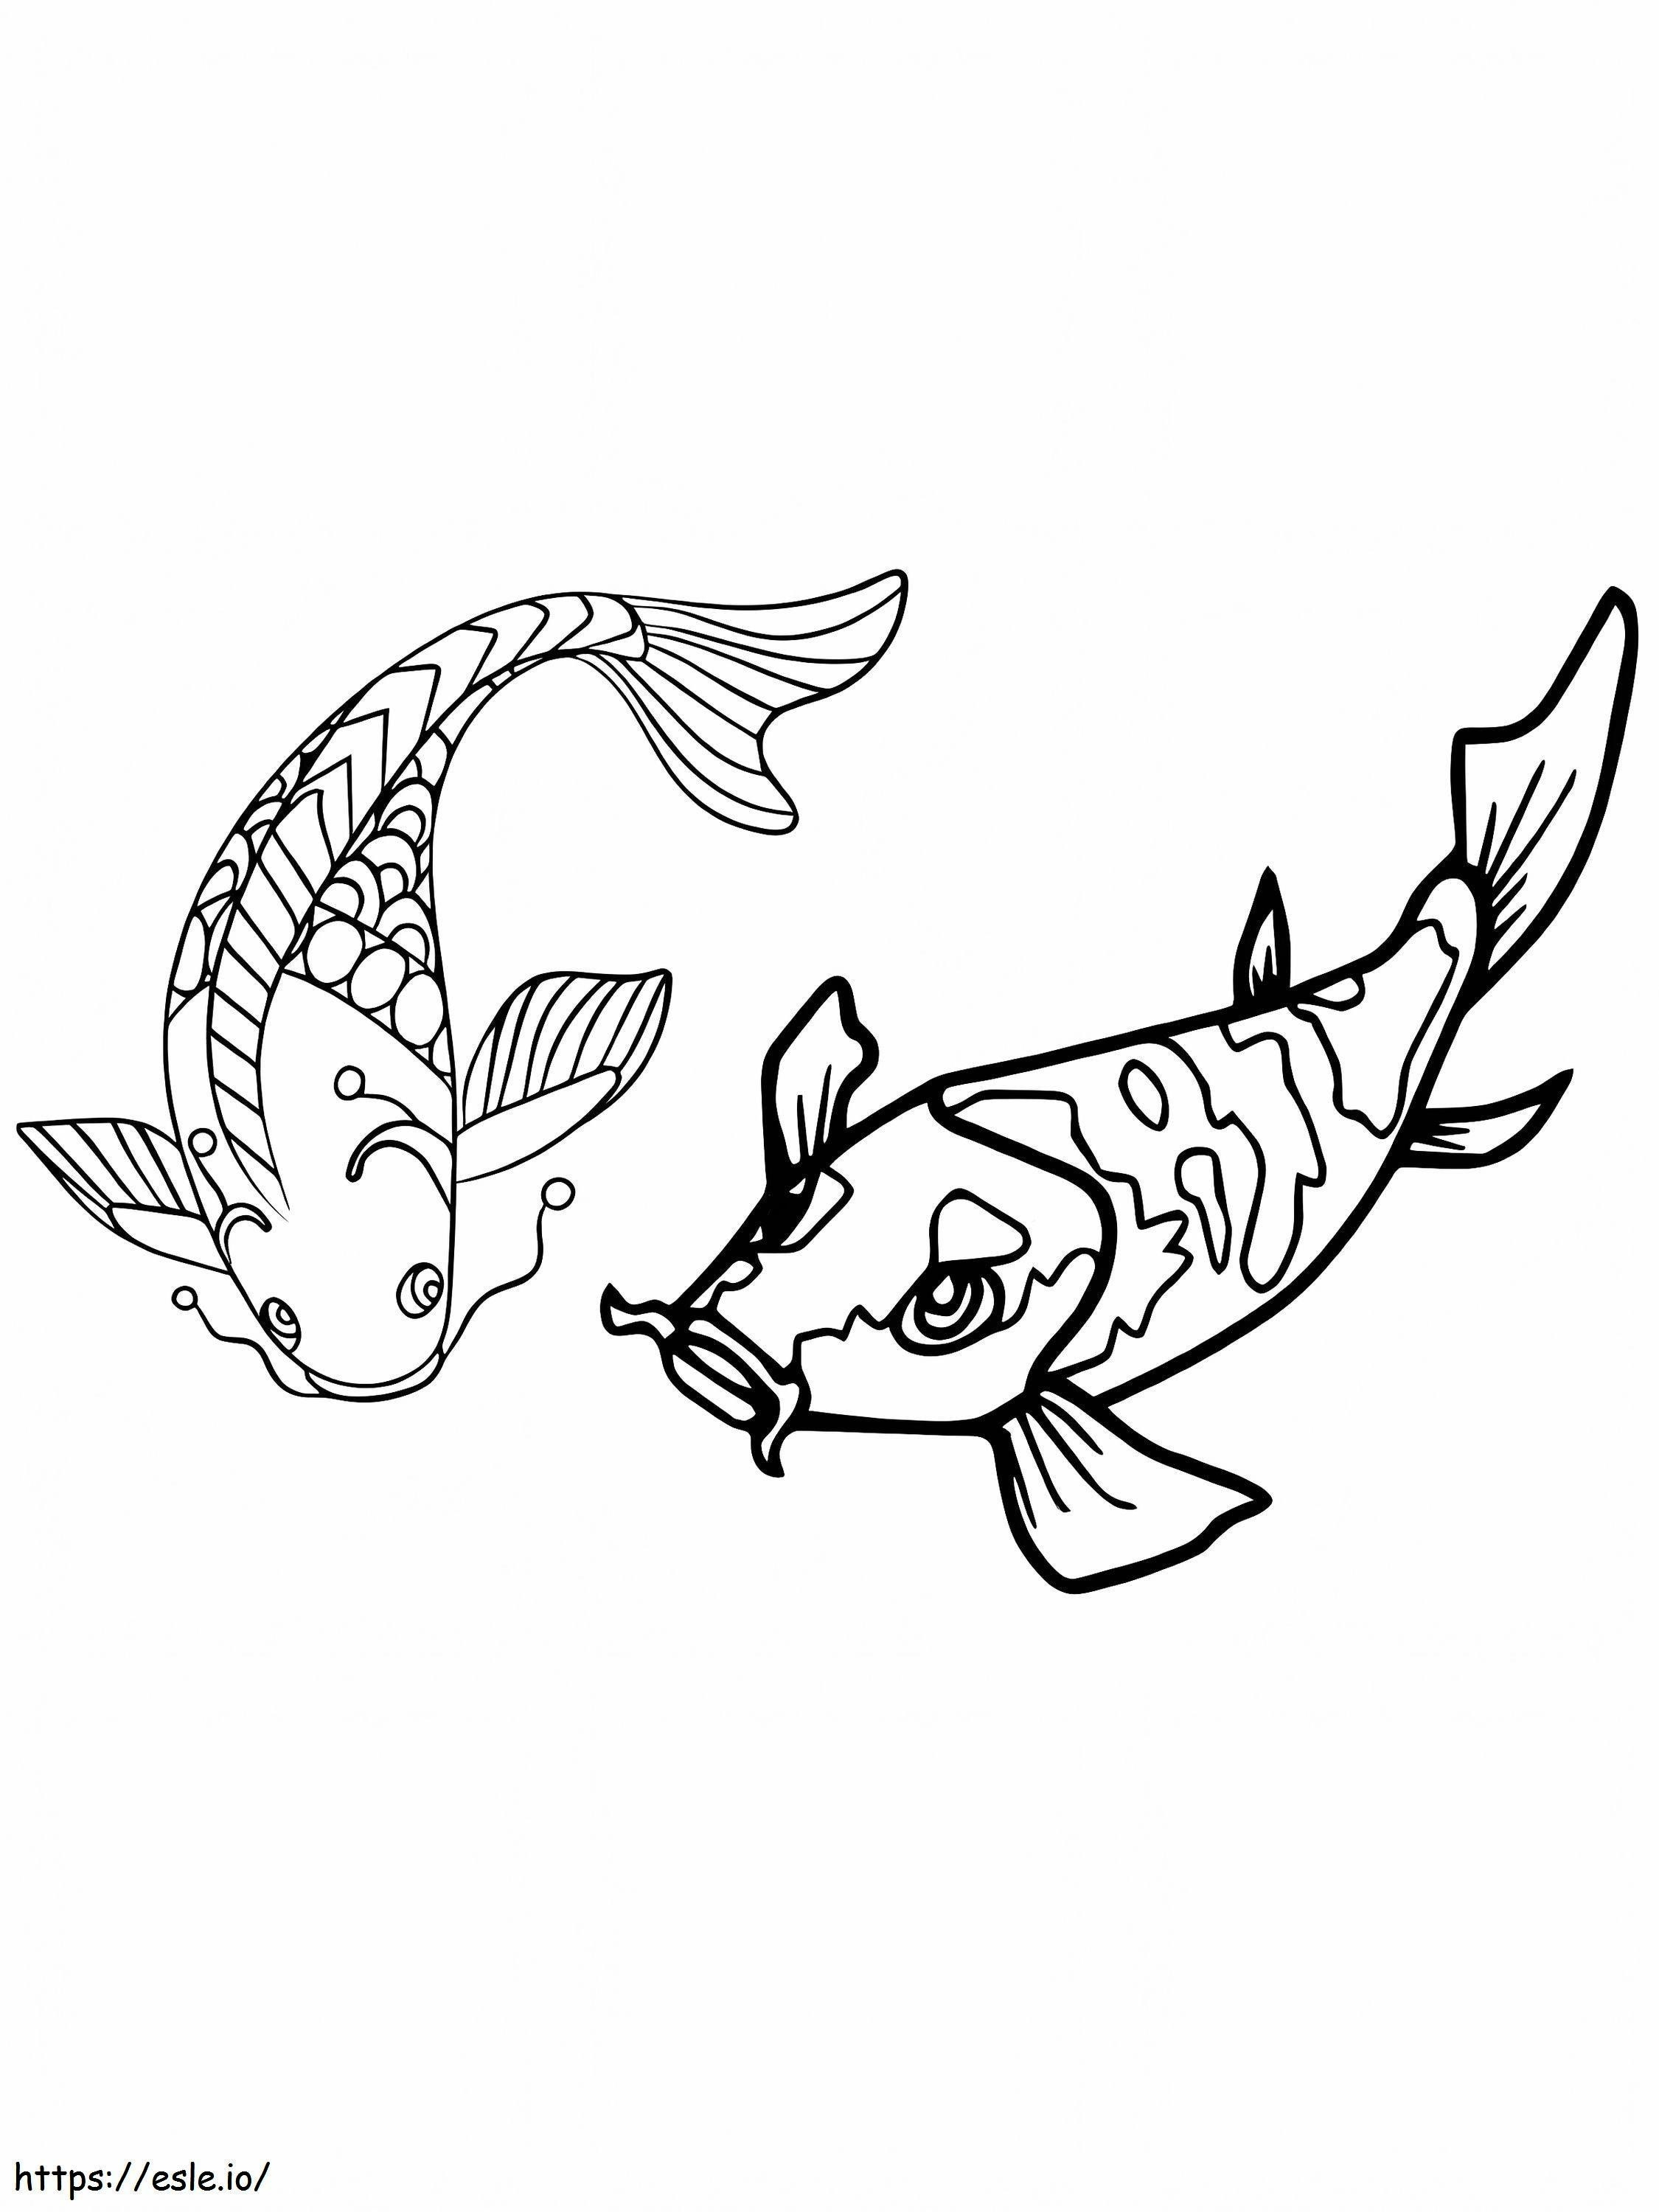 Zwei alte Koi-Fische ausmalbilder